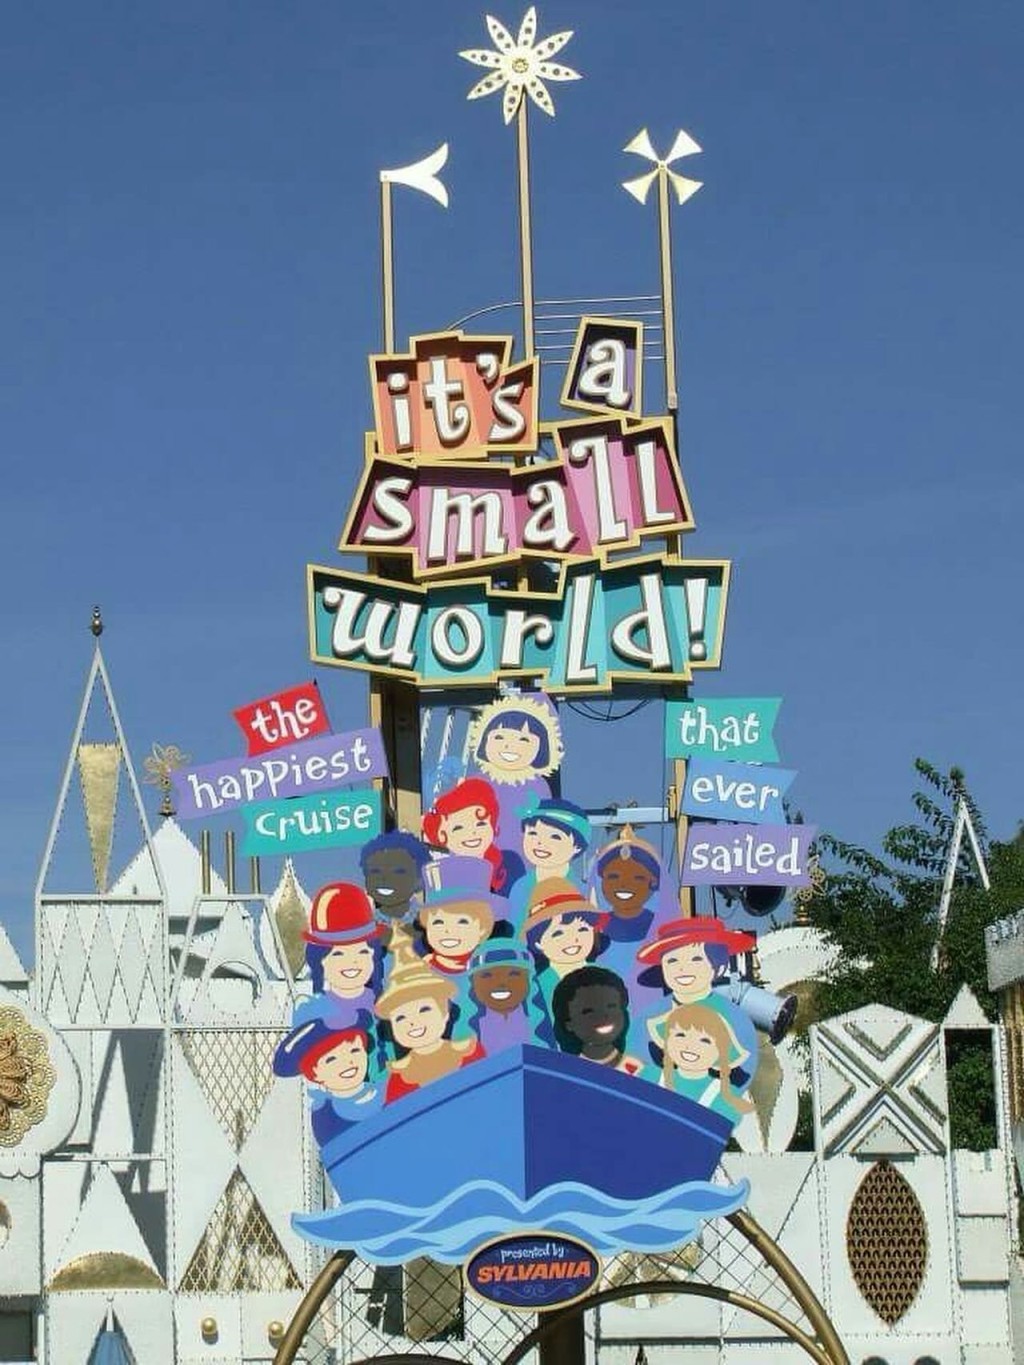 舍曼創作的《世界真細小》成為迪士尼的主題曲。